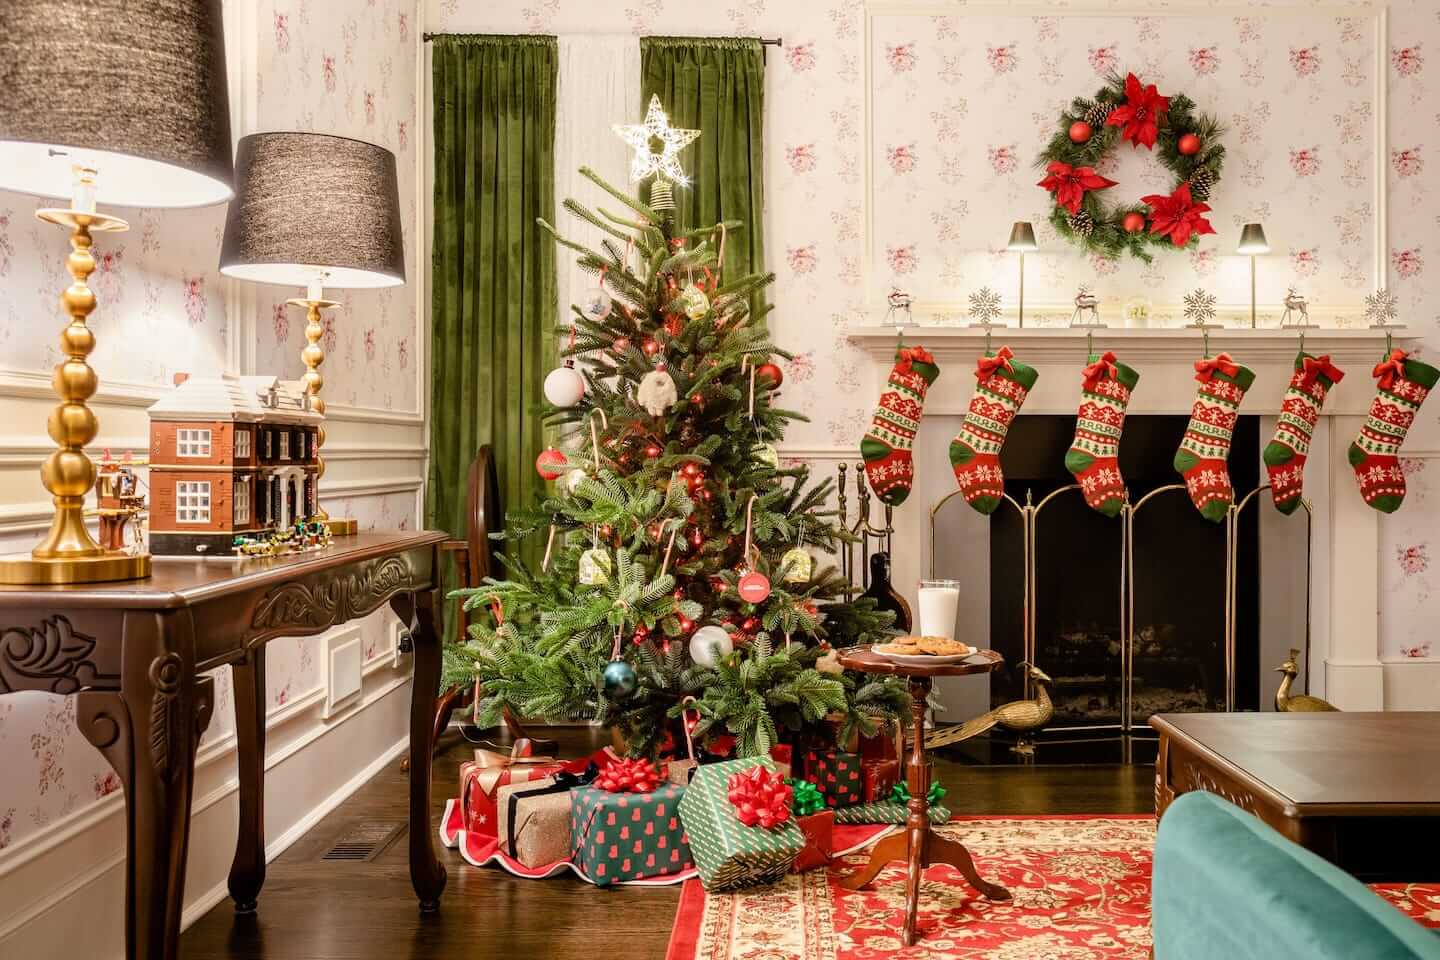 στολισμένο χριστουγεννιάτικα το εσωτερικό του σπιτιού από την ταινία Home Alone